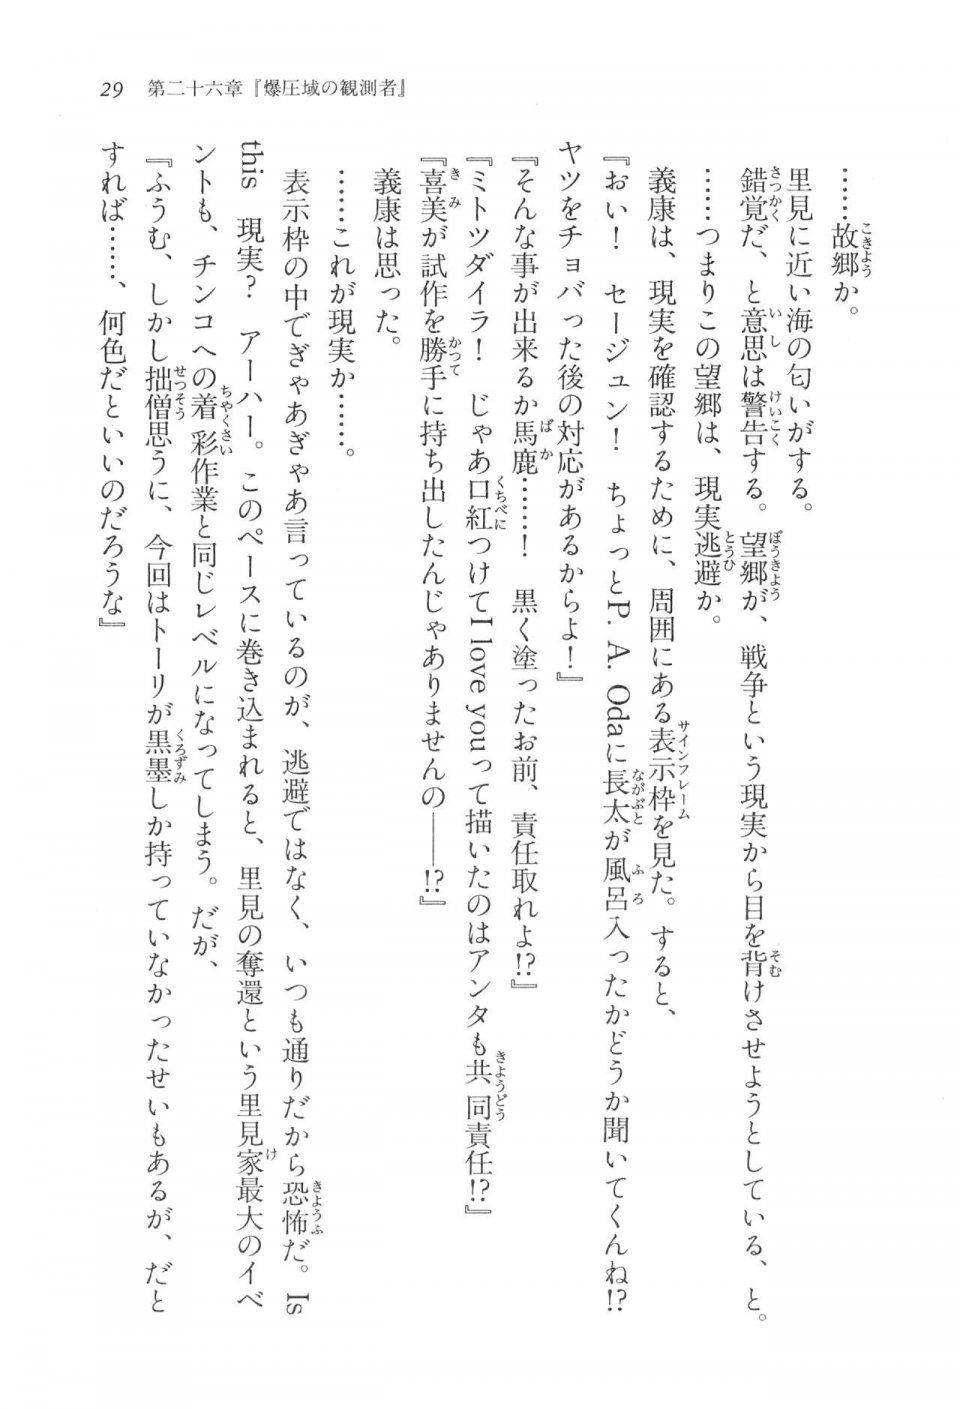 Kyoukai Senjou no Horizon LN Vol 17(7B) - Photo #29